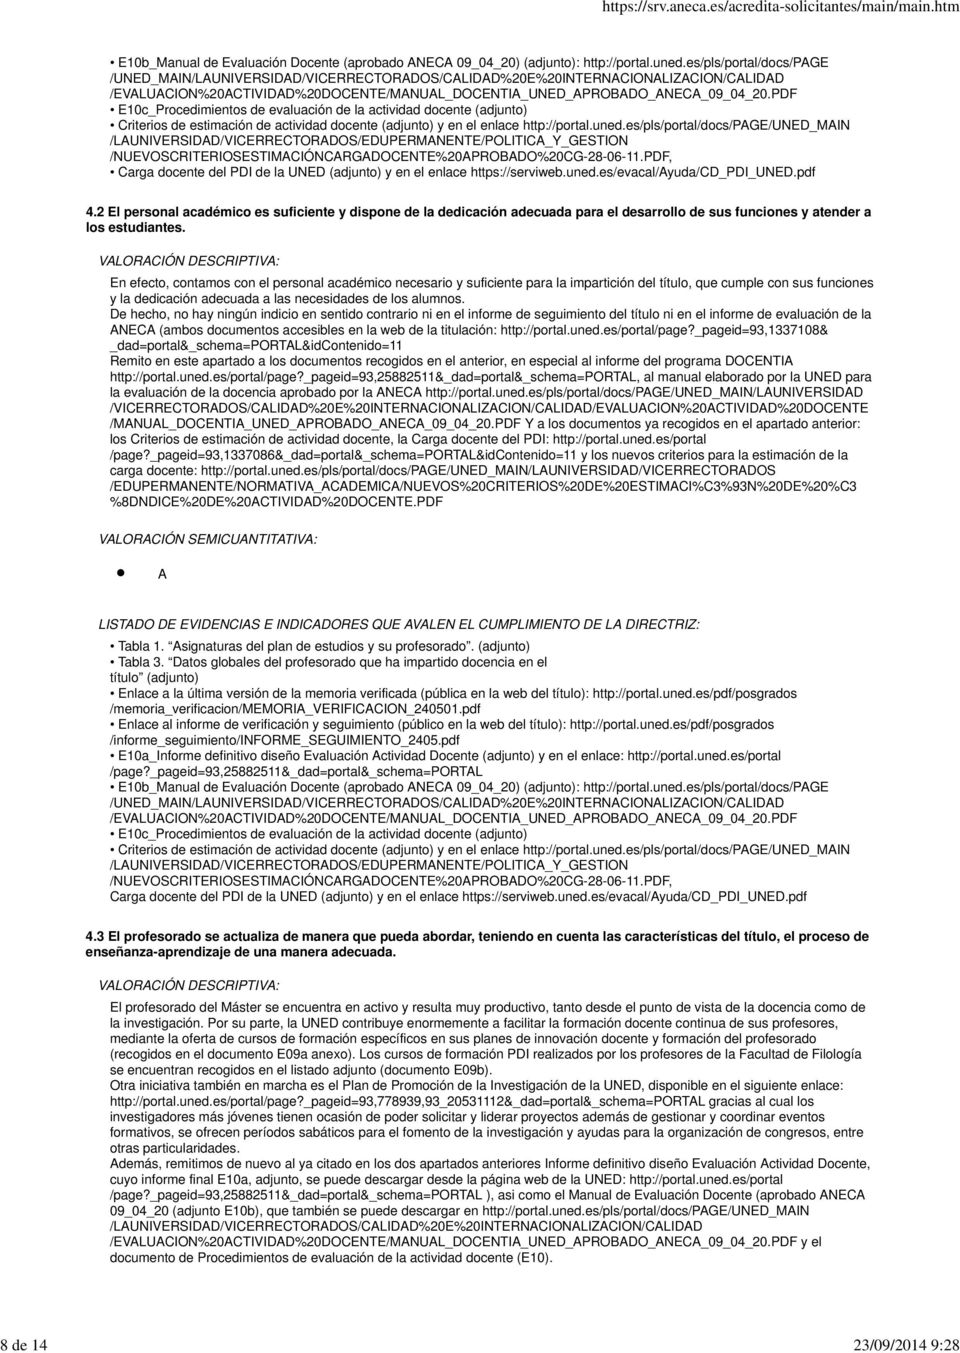 PDF E10c_Procedimientos de evaluación de la actividad docente (adjunto) Criterios de estimación de actividad docente (adjunto) y en el enlace http://portal.uned.